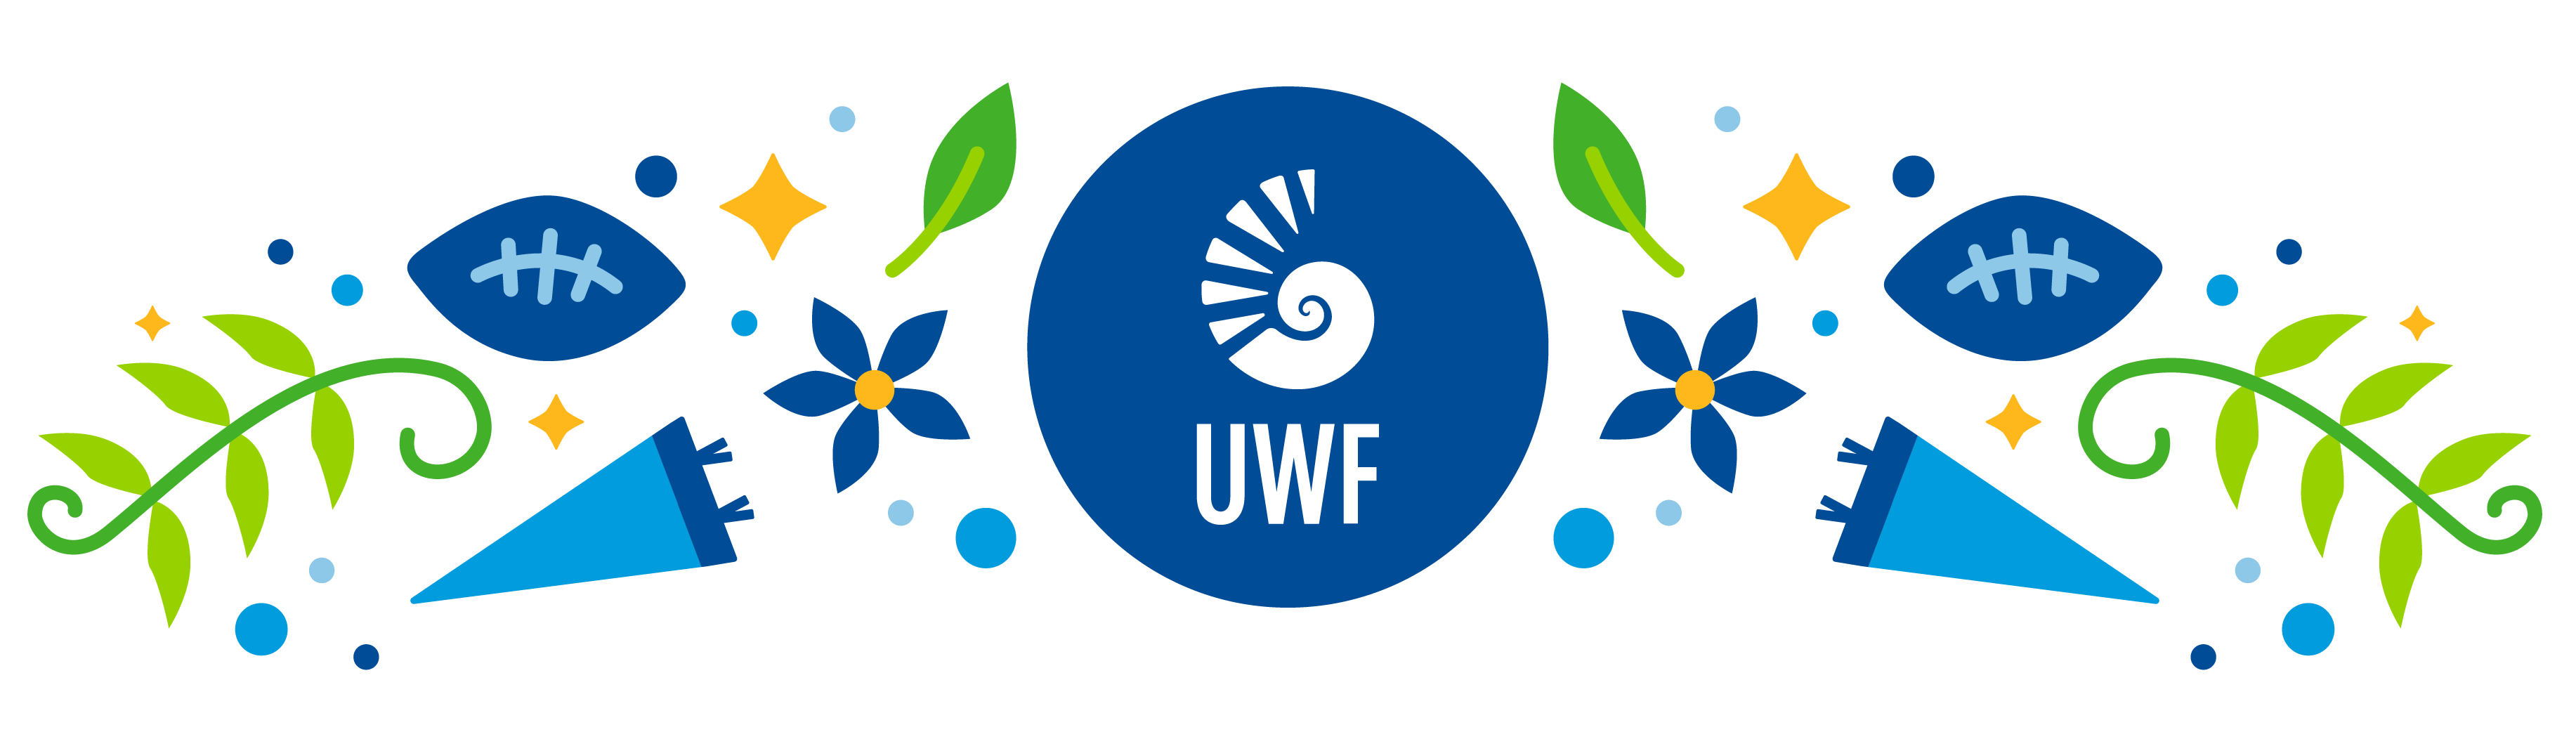 UWF lettermark logo surrounded by decorative elements